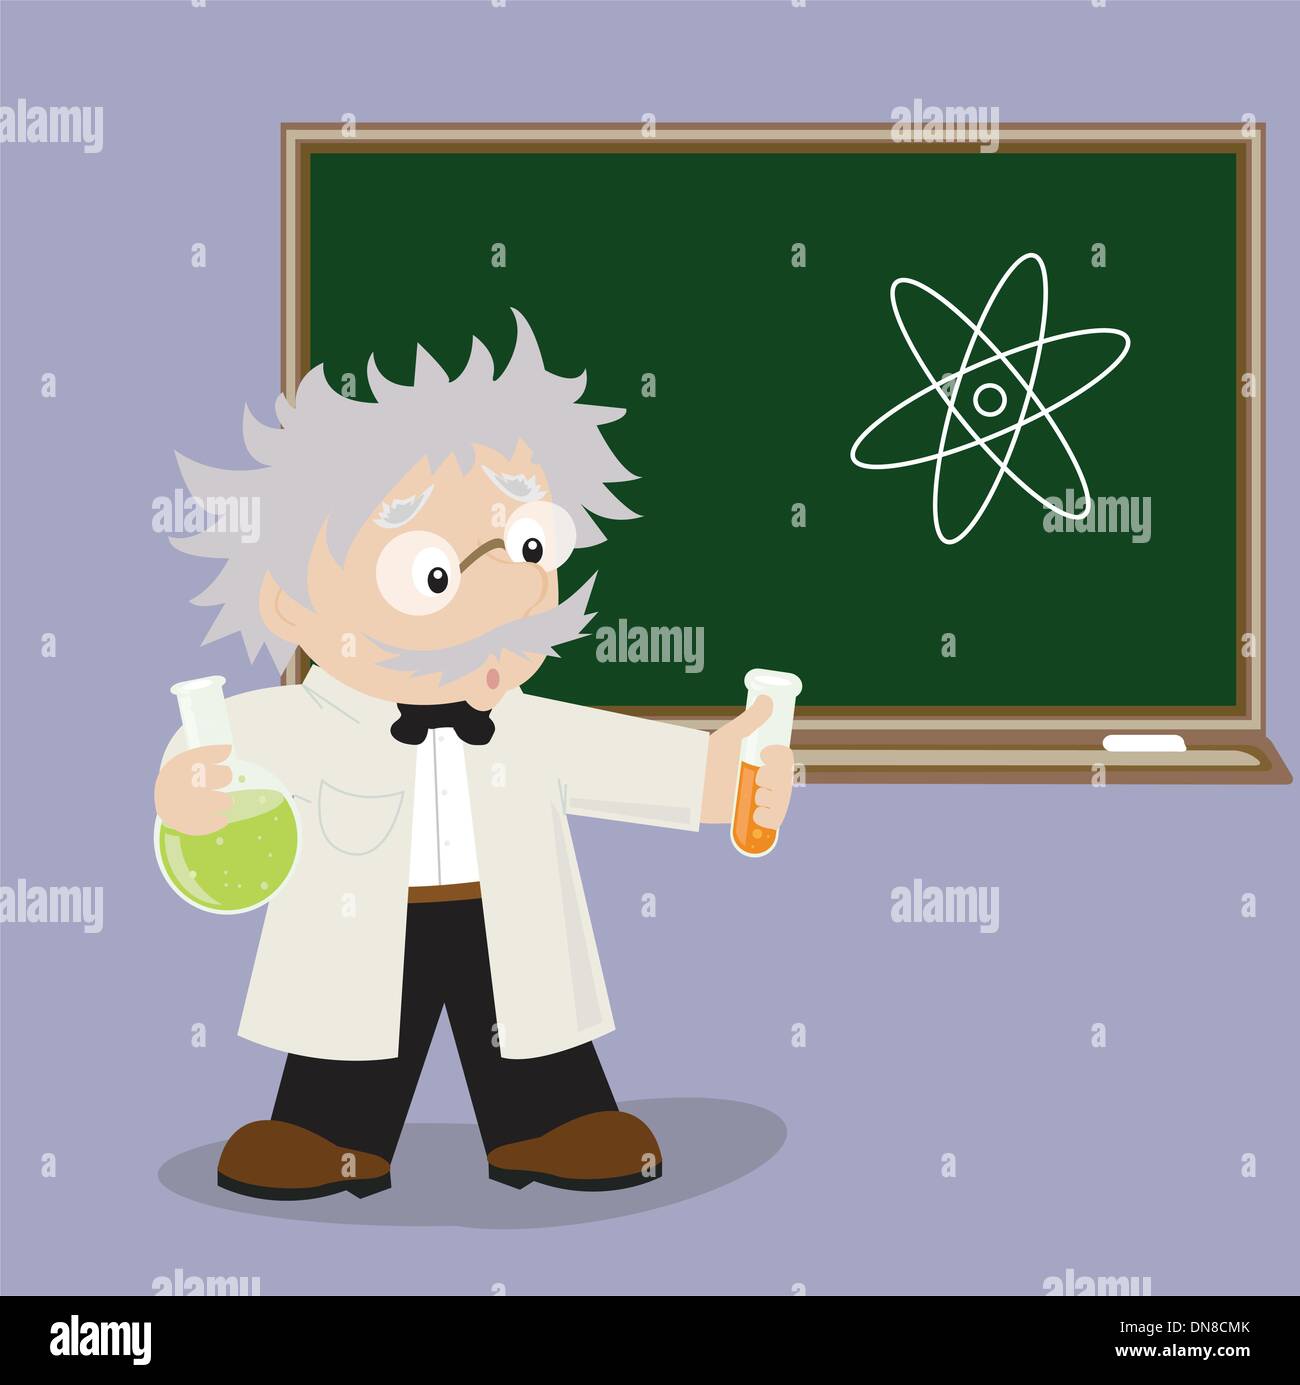 Funny cartoon scienziato in pose diverse da utilizzare nella pubblicità, presentazioni, brochure, blog, documenti e moduli, ecc. Illustrazione Vettoriale